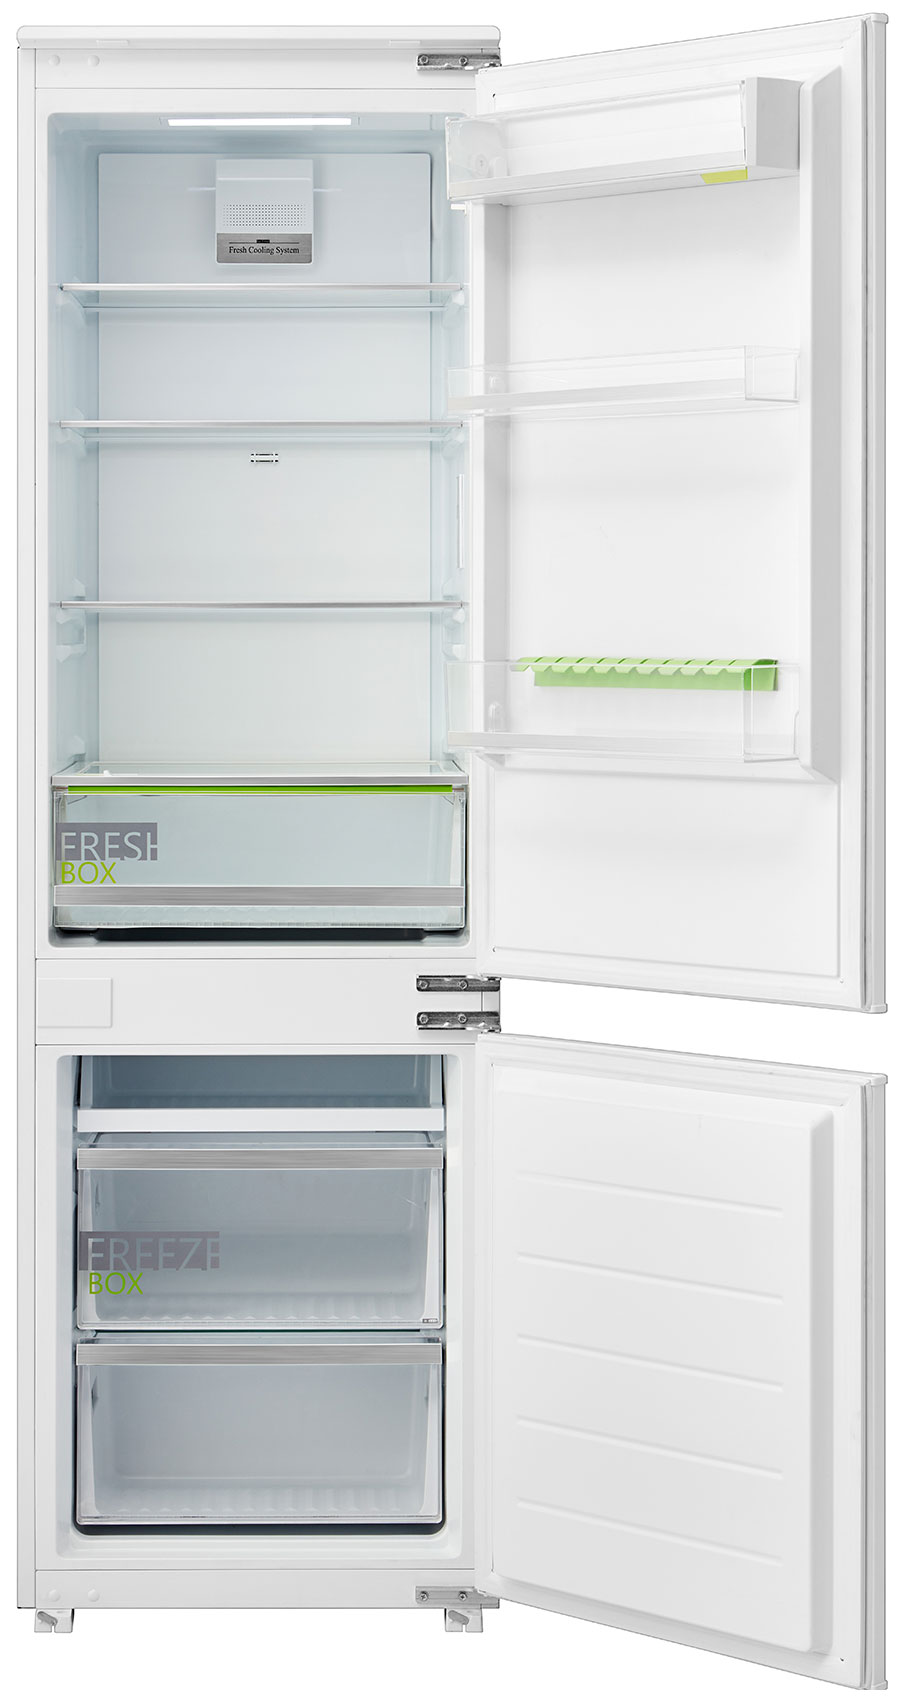 Встраиваемый двухкамерный холодильник Midea MDRE353FGF01 встраиваемый двухкамерный холодильник midea mdre353fgf01